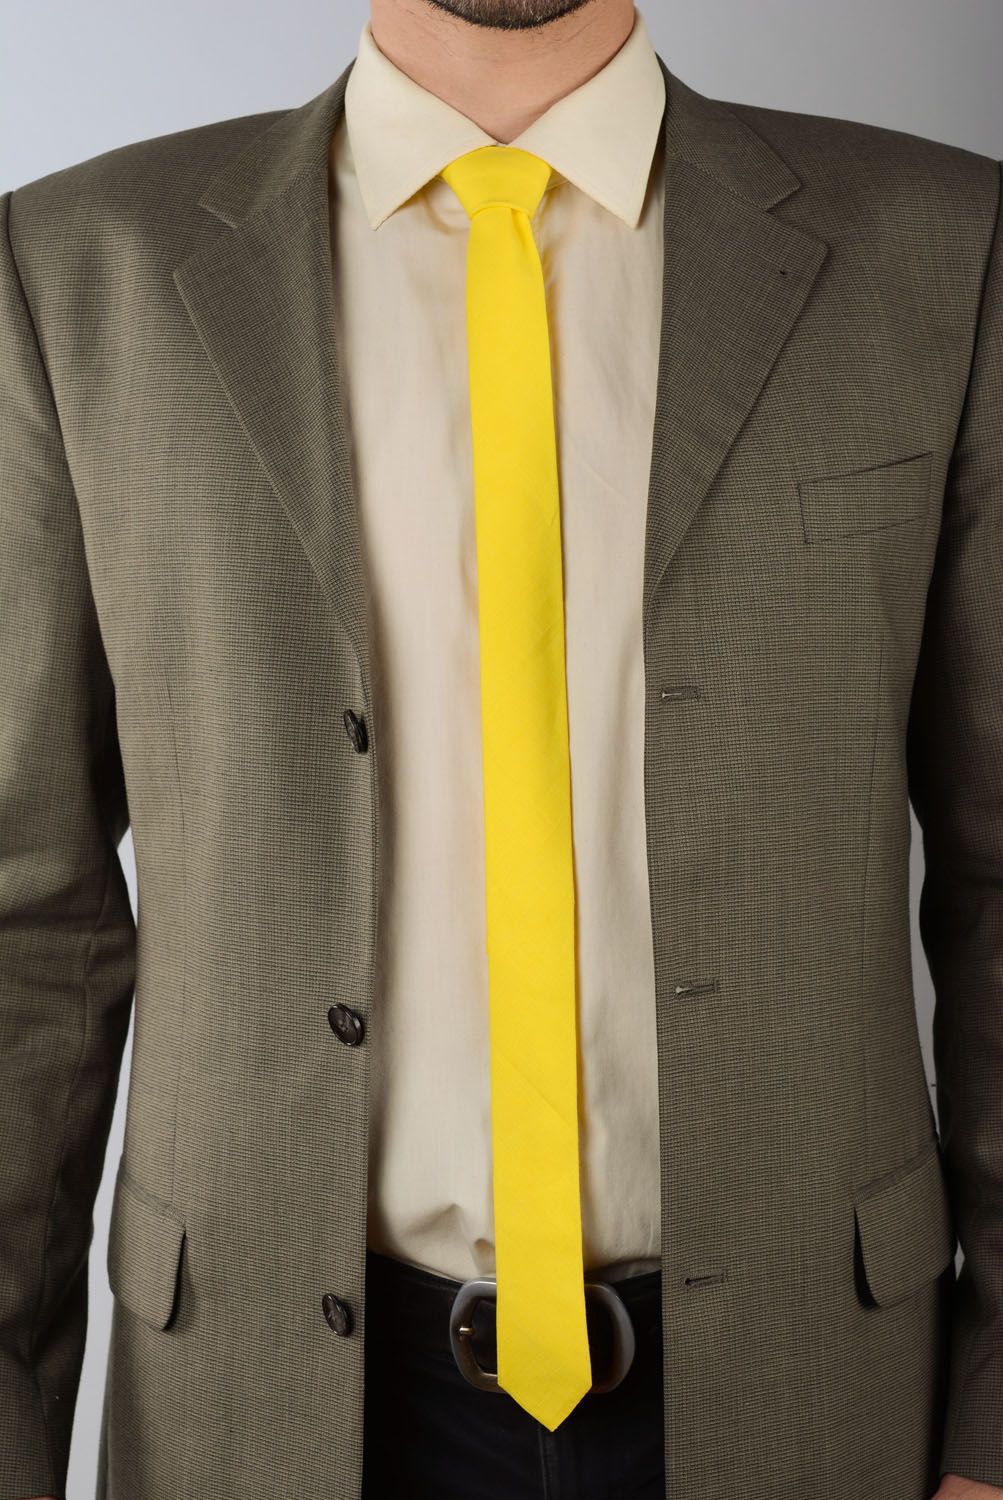 Cravate en lin jaune faite main photo 1